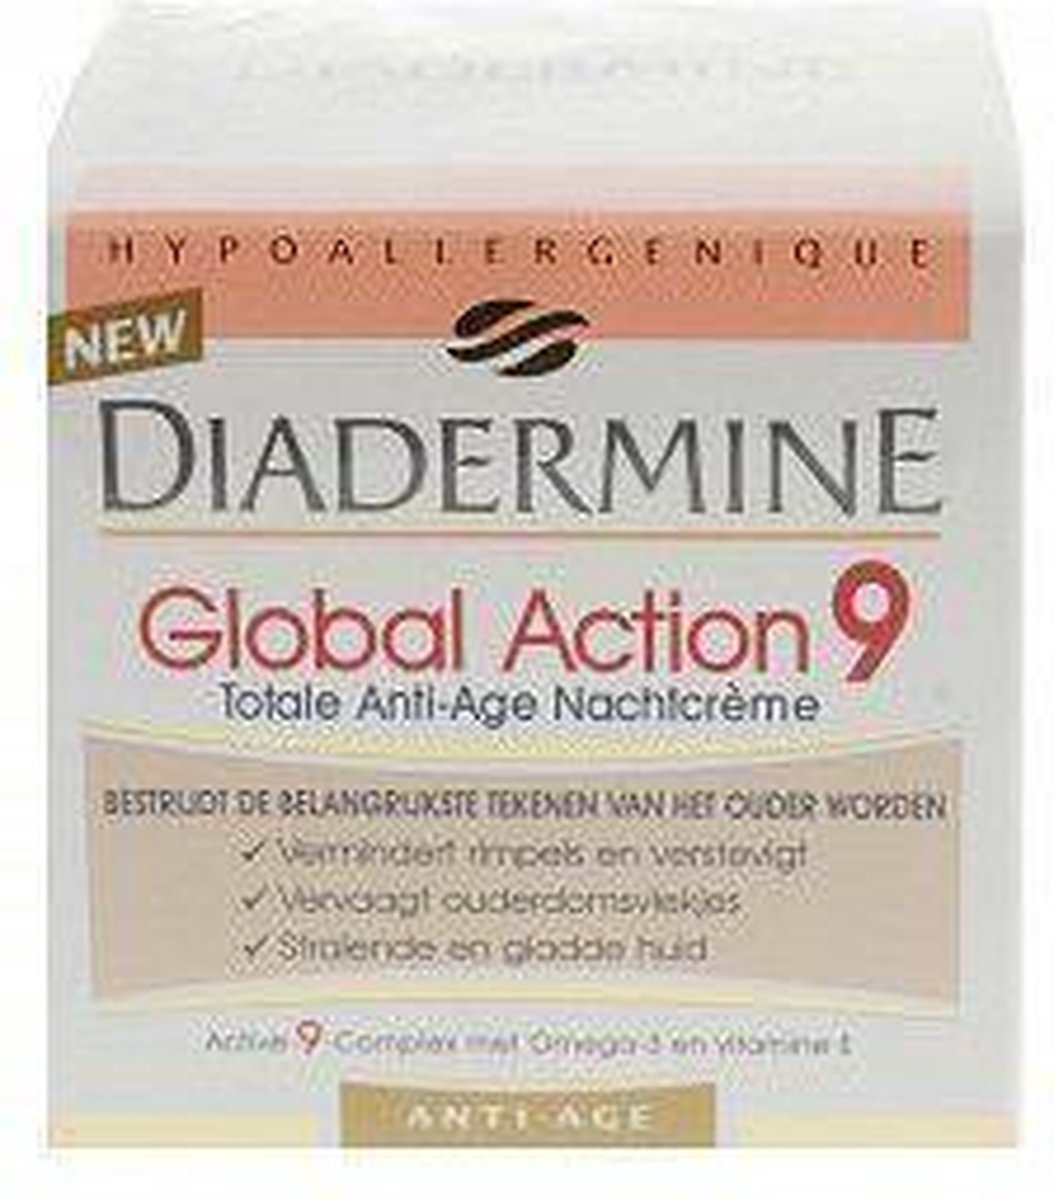 Diadermine Global Action 9 Nachtcreme